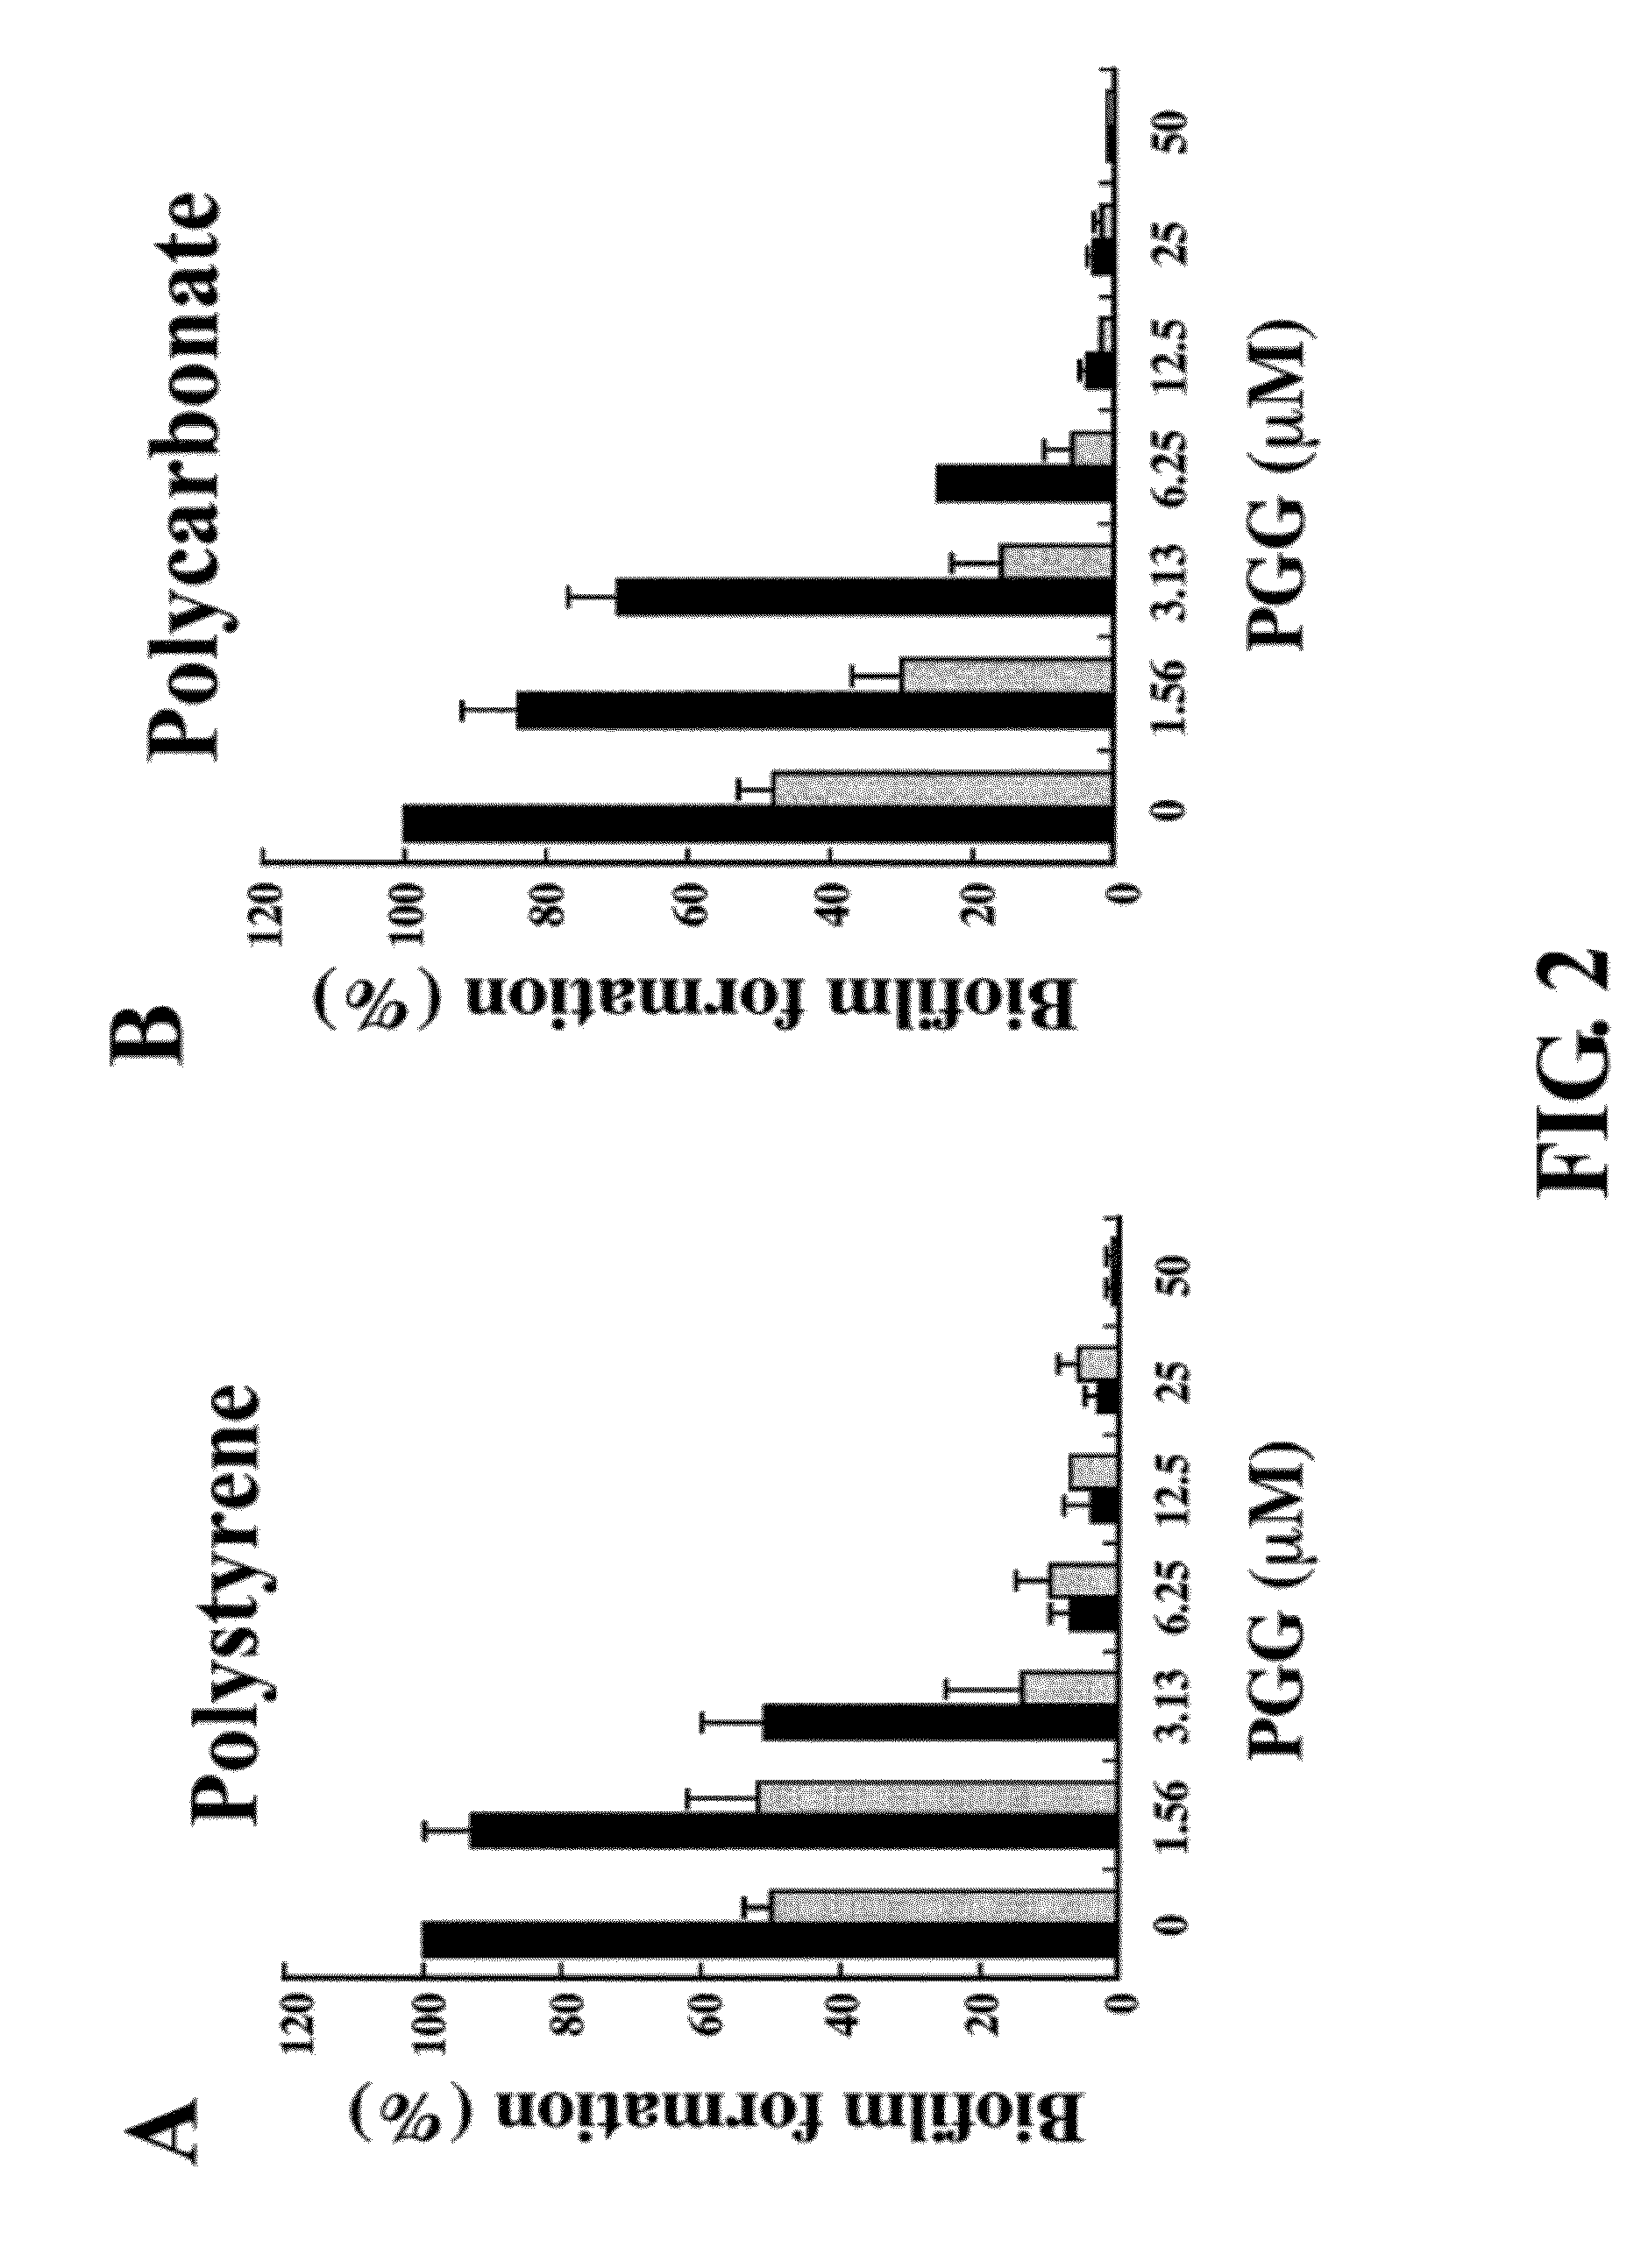 Inhibition of biofilm formation by 1,2,3,4,6-penta-o-galloyl-d-glucopyranose